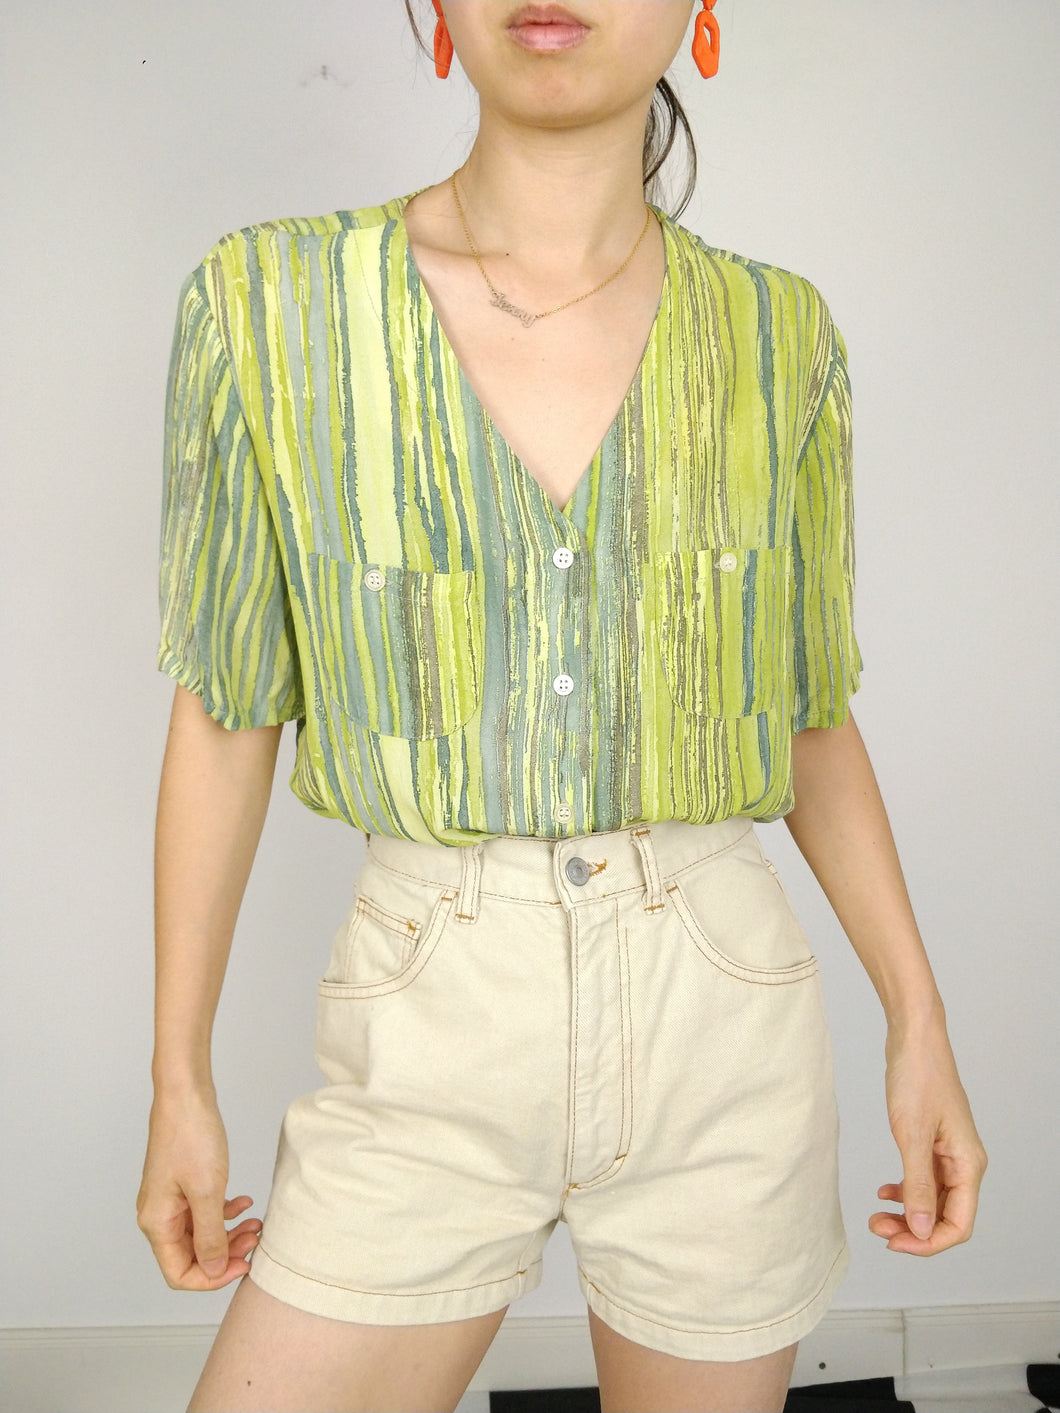 Die grüne Kiwi | Vintage-Bluse mit Streifenmuster, grün, kurzärmelig, M